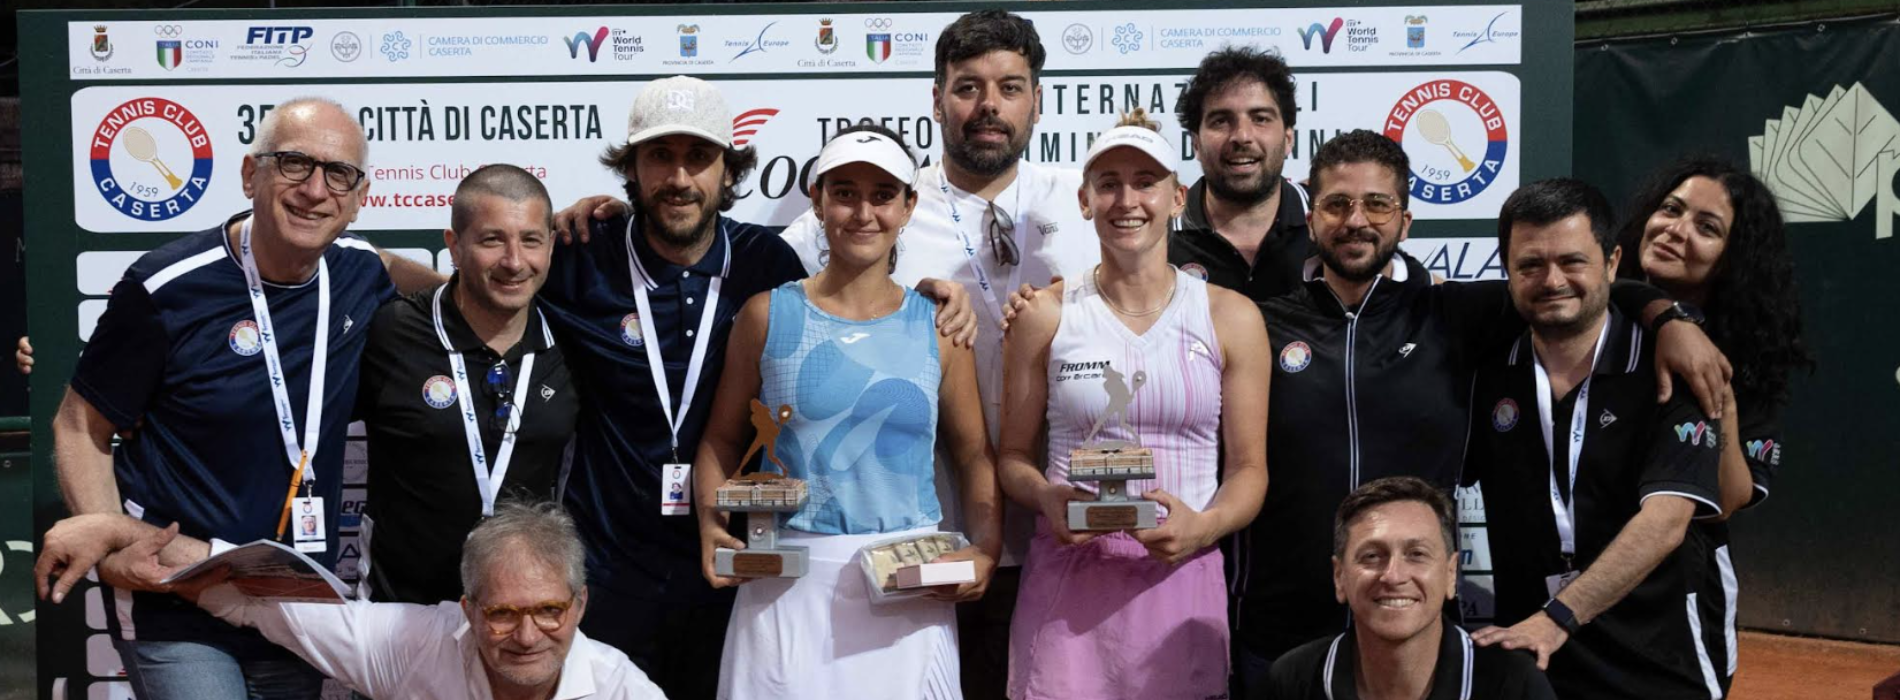 Internazionali Femminili di Tennis, un successo la 35esima edizione